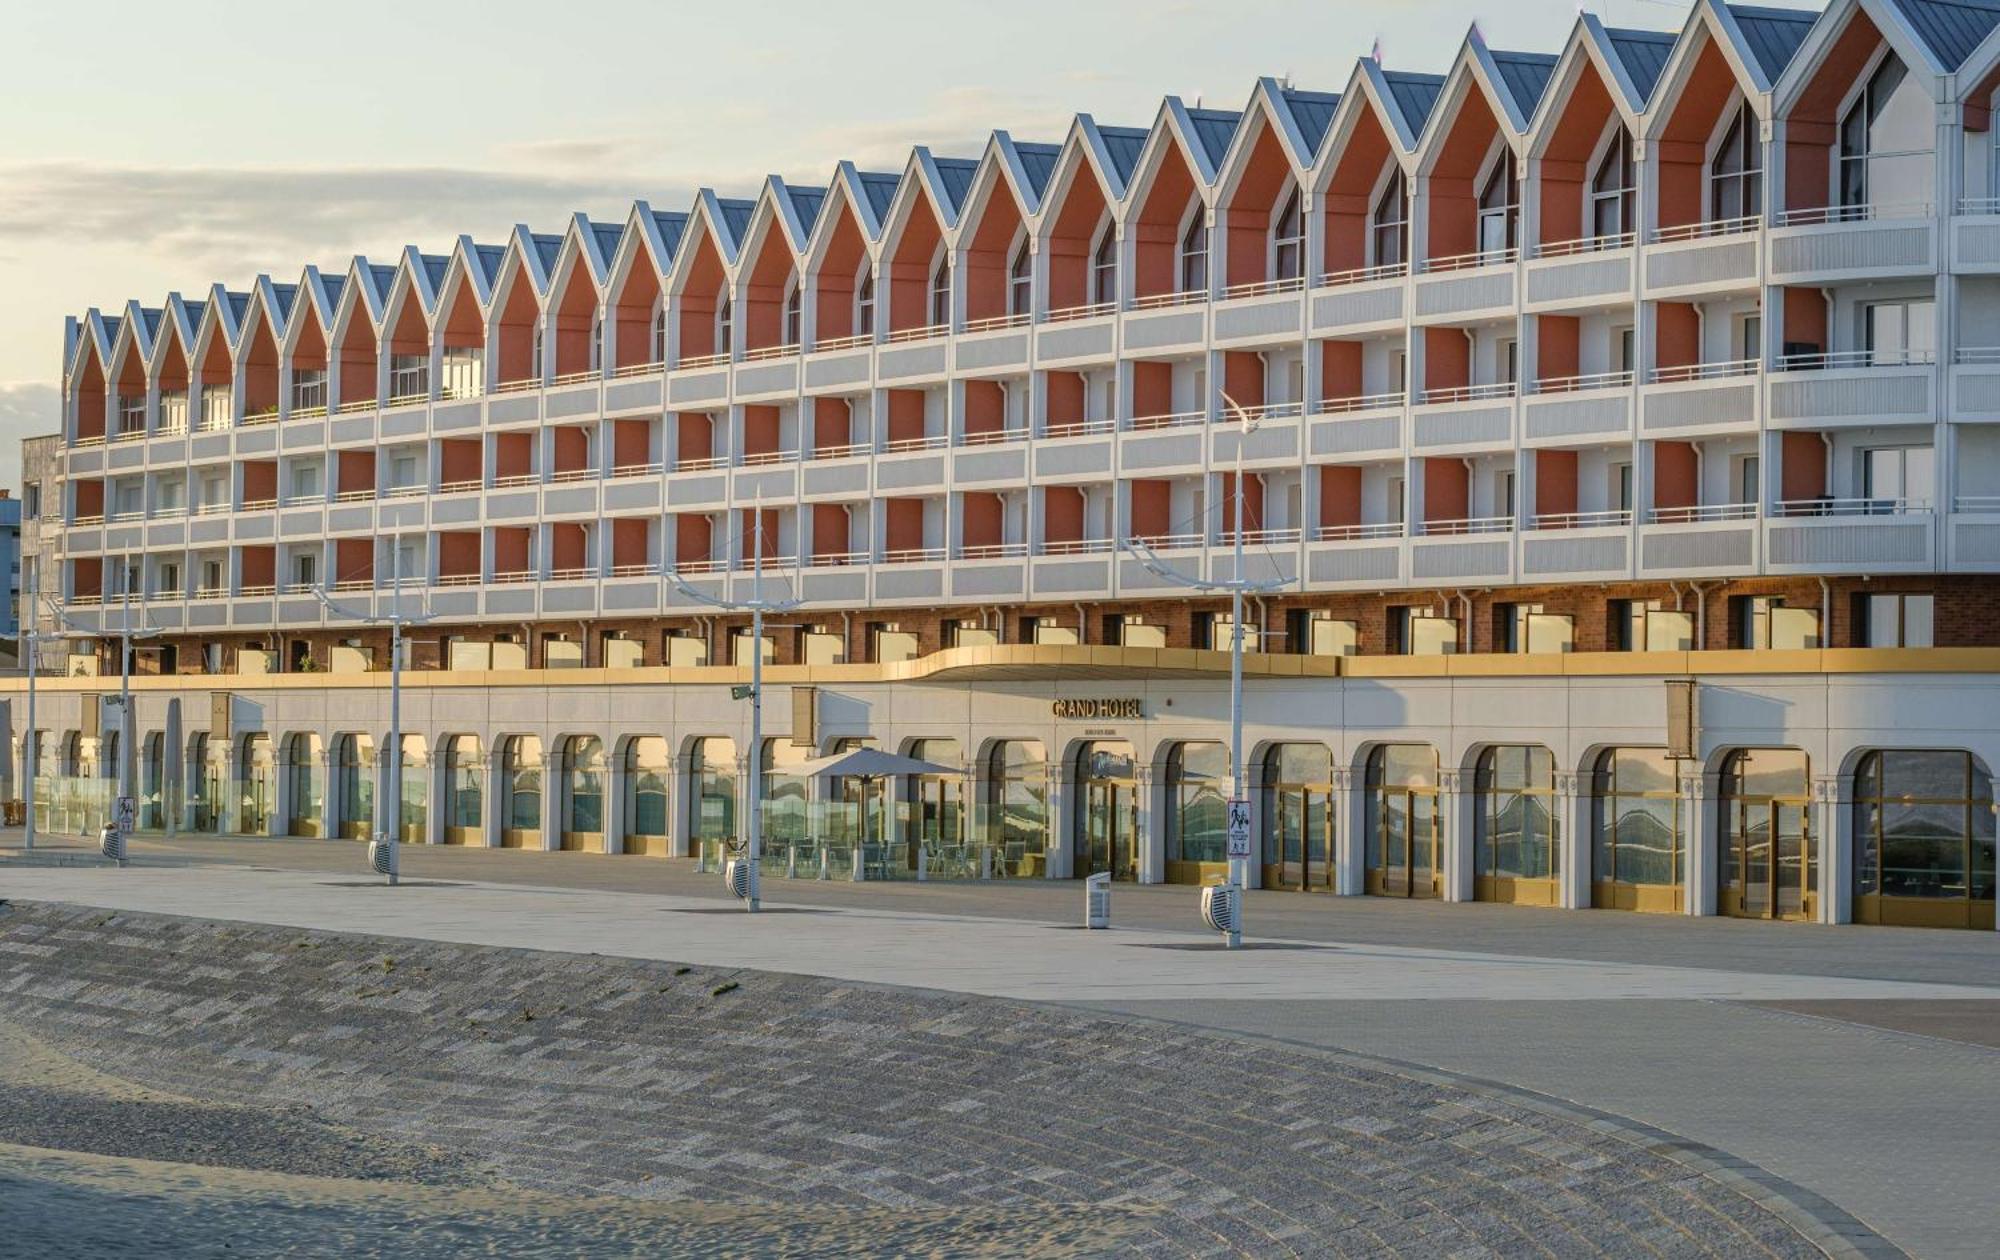 Radisson Blu Grand Hotel&Spa, Malo-Les-Bains Dunkirk Extérieur photo